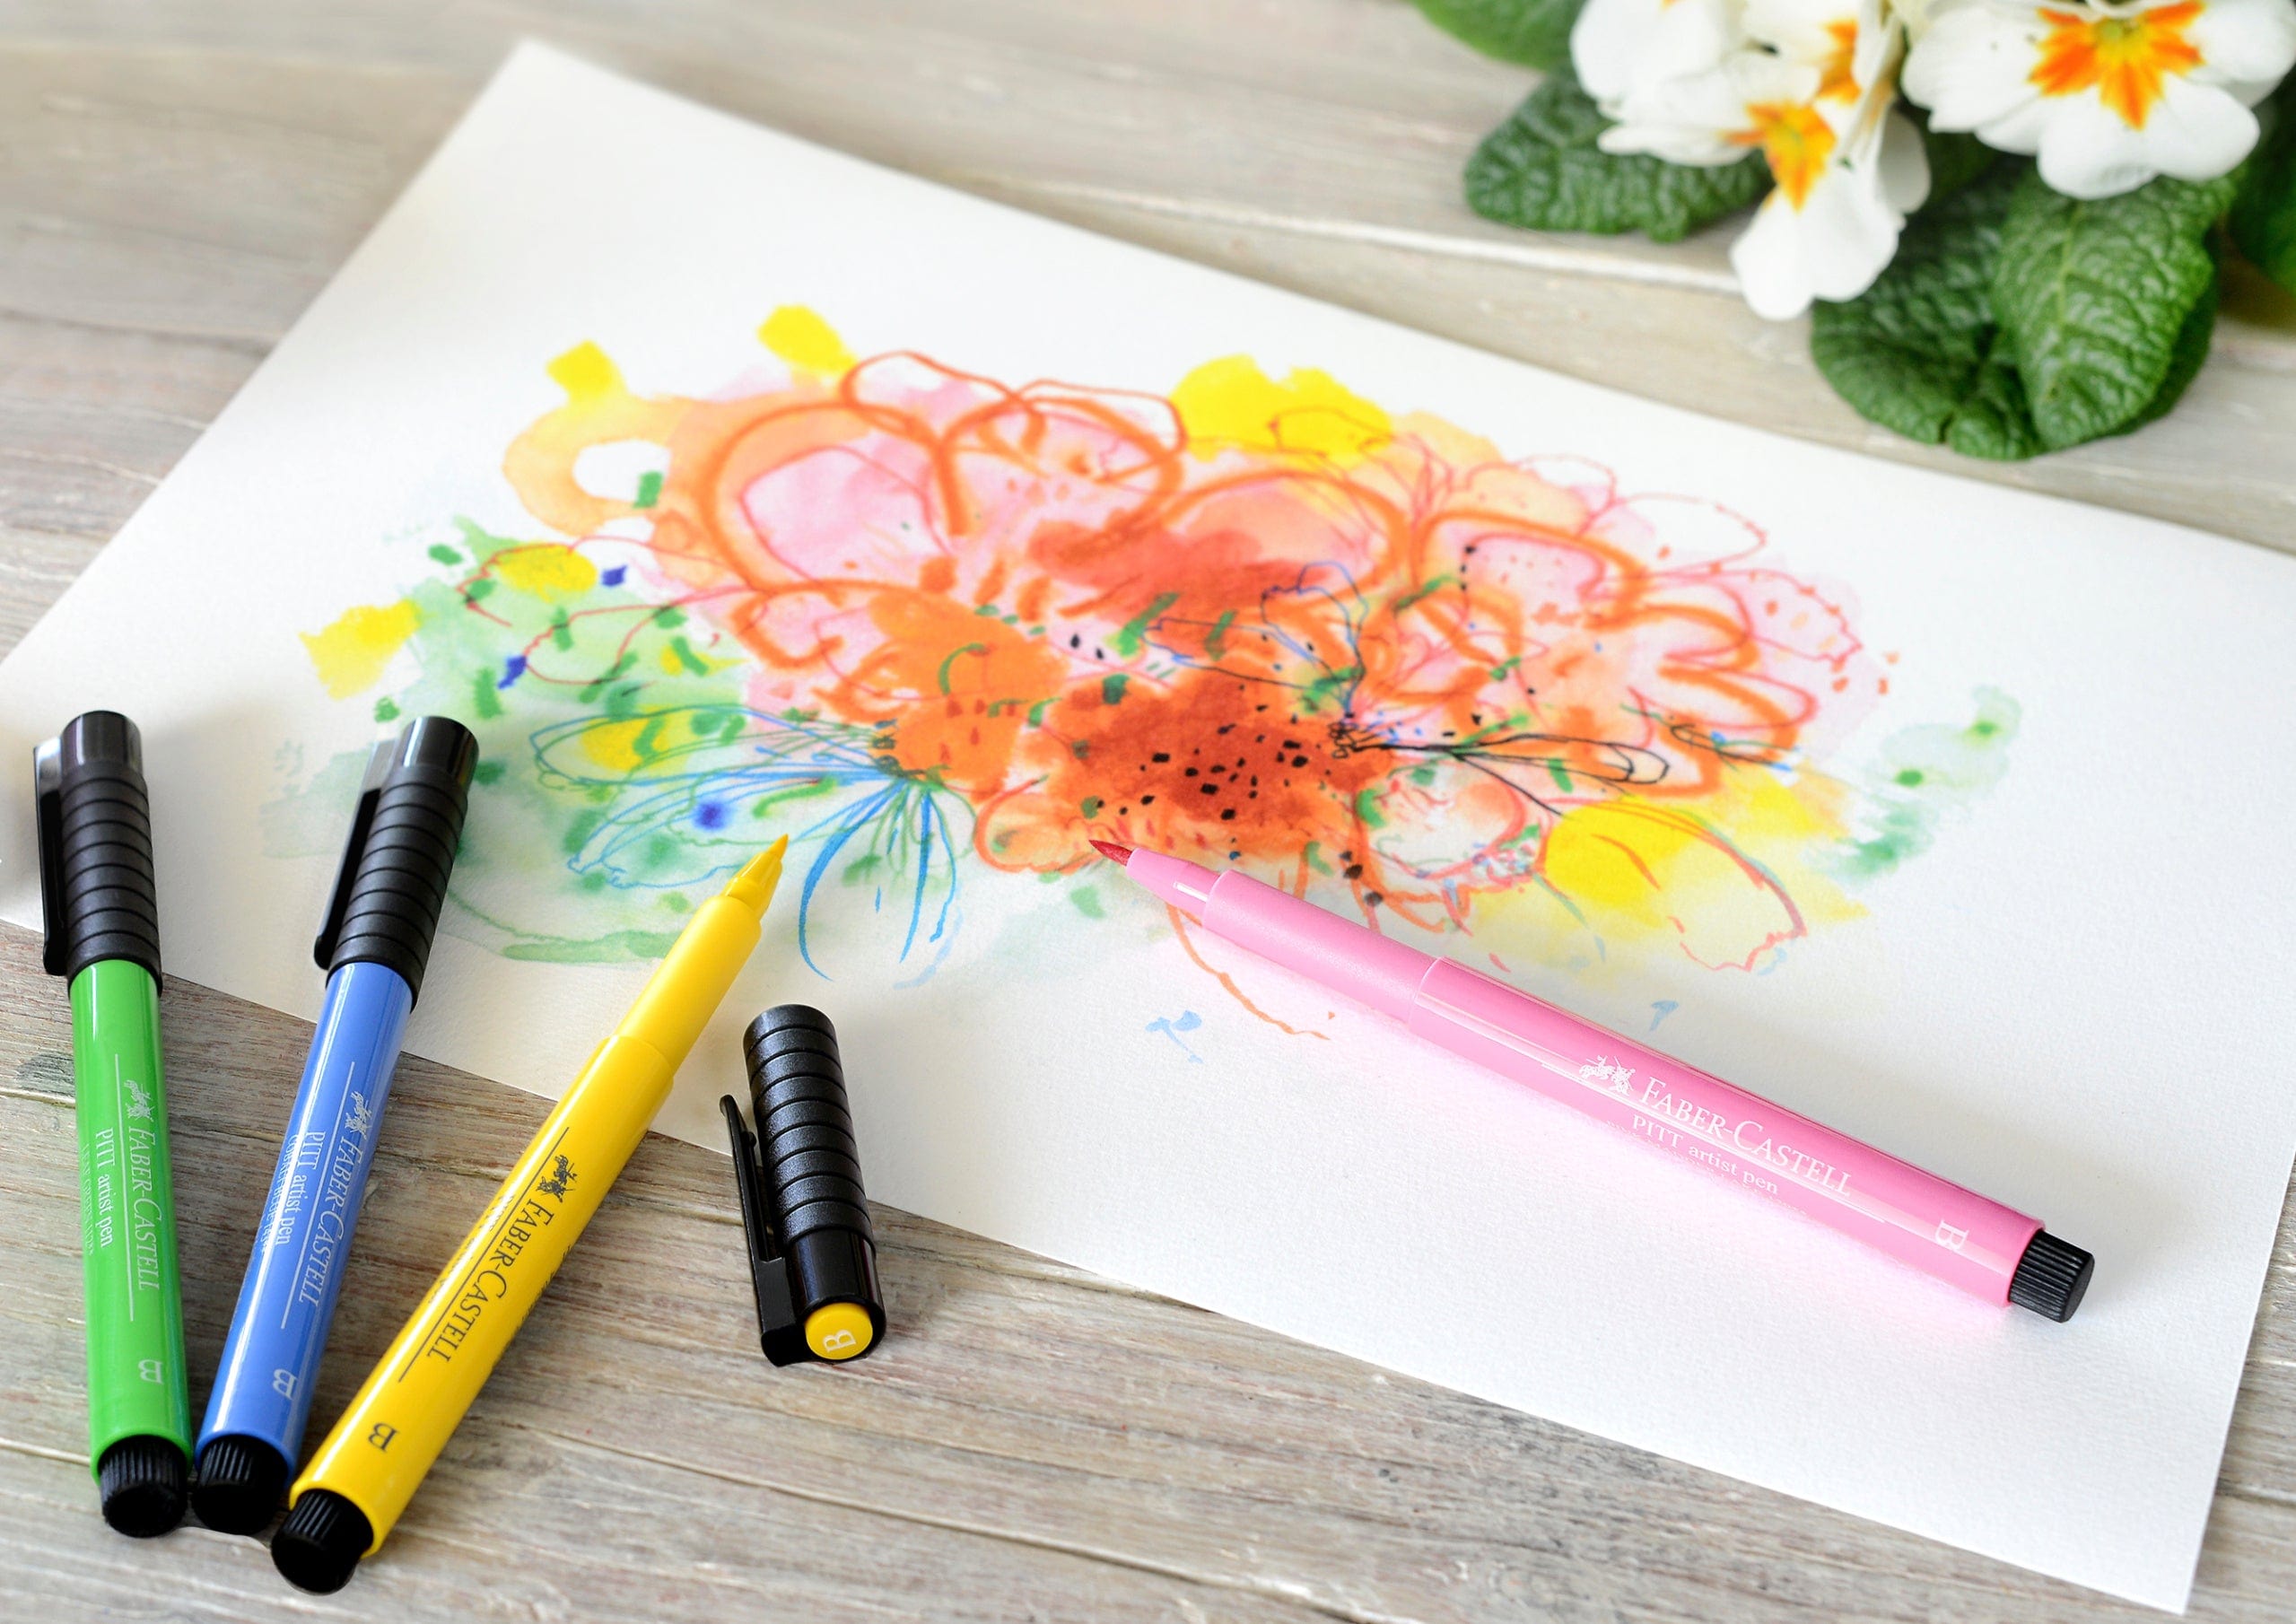 Faber-Castell Tuscher Pitt artist pen gavesæt klare farver - 12 farver